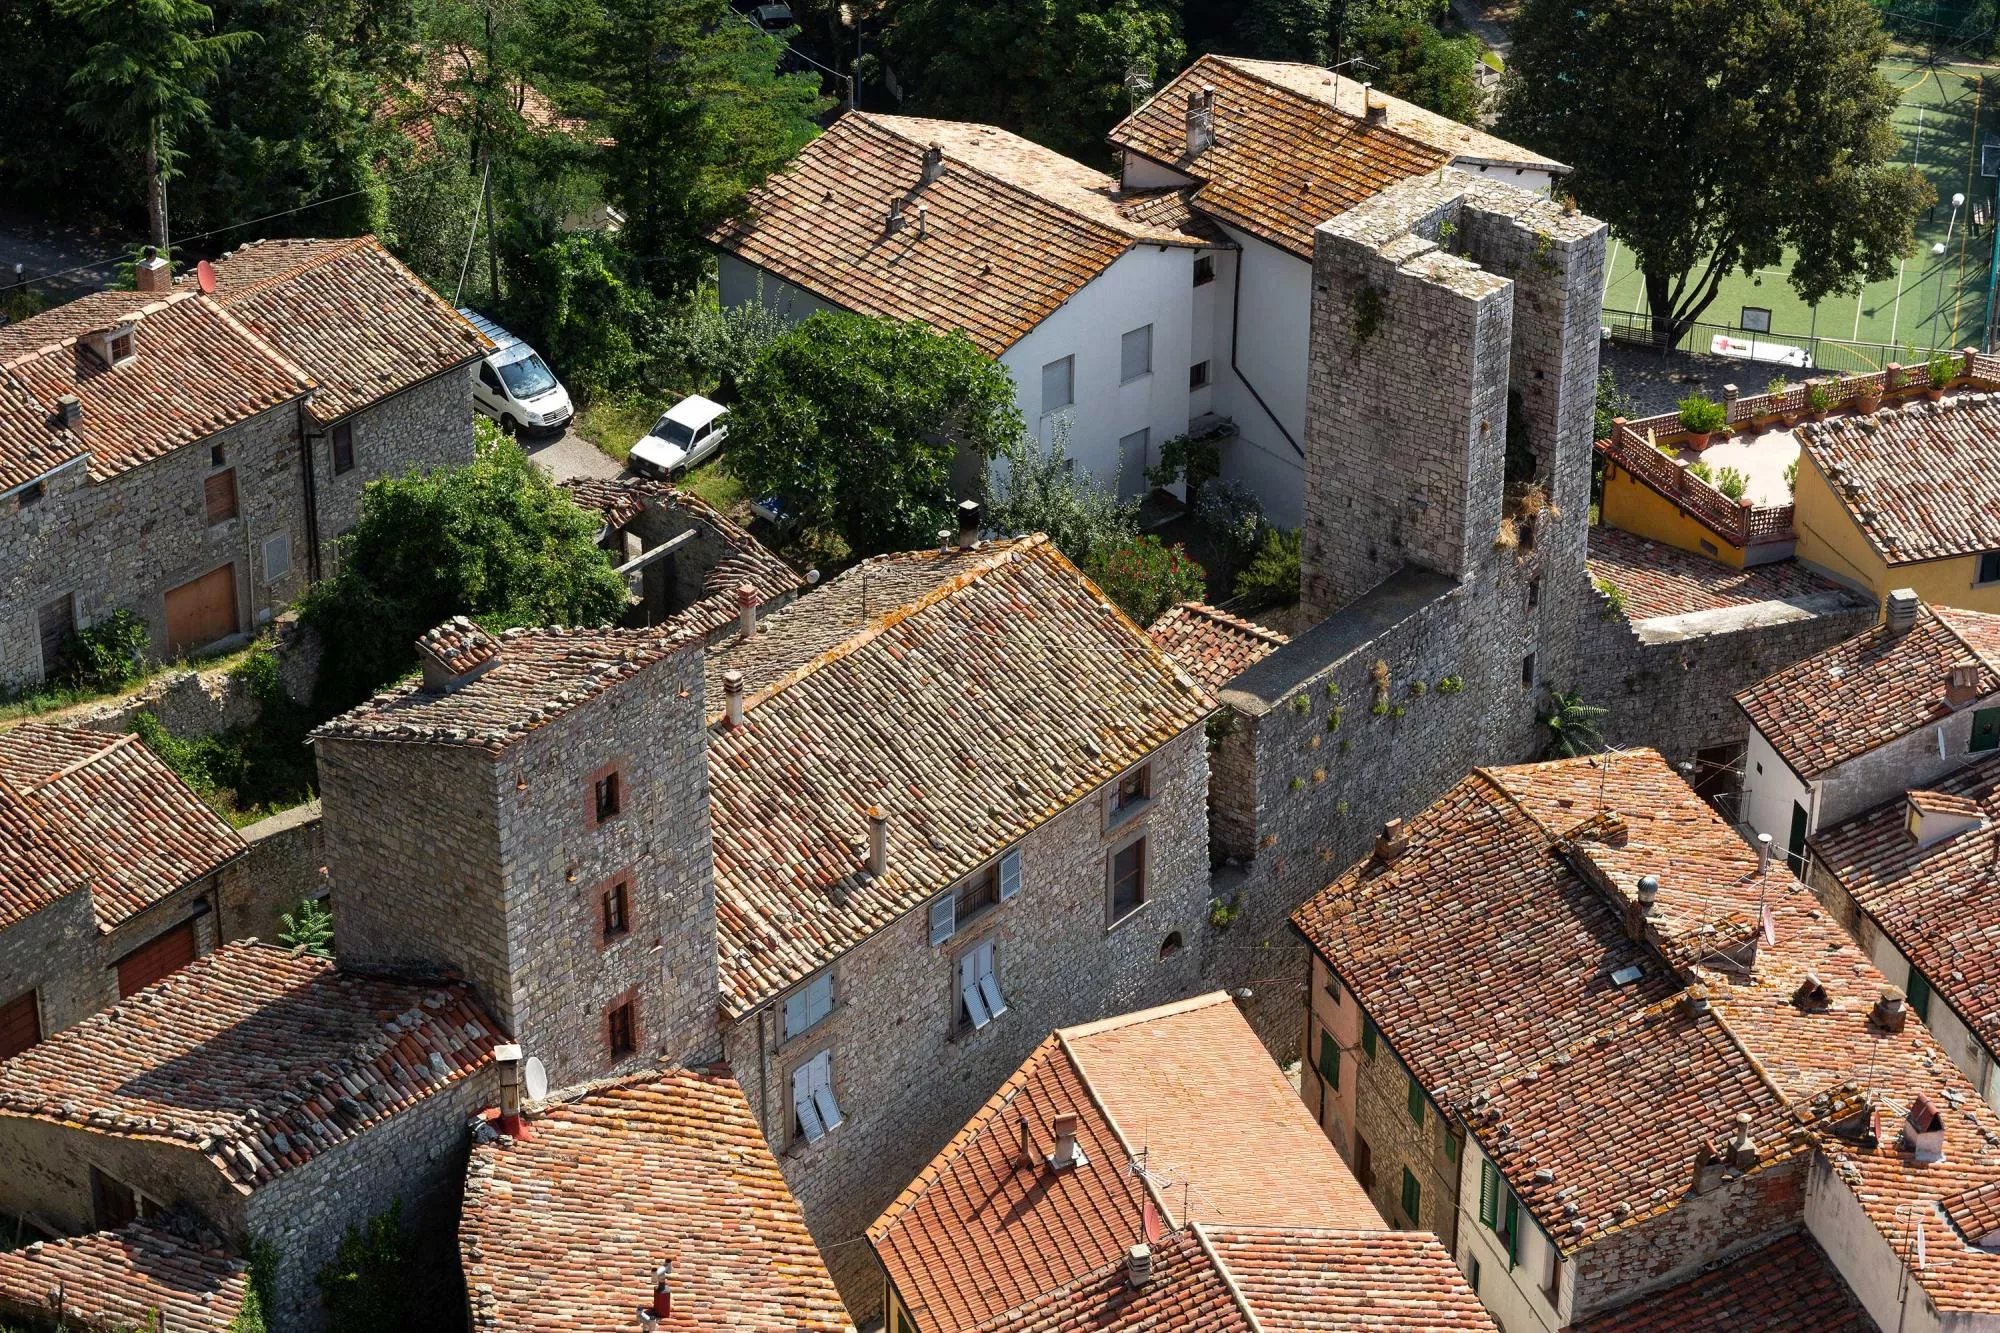 Rocca Aldobrandesca e Cassero Senese - Roccalbegna